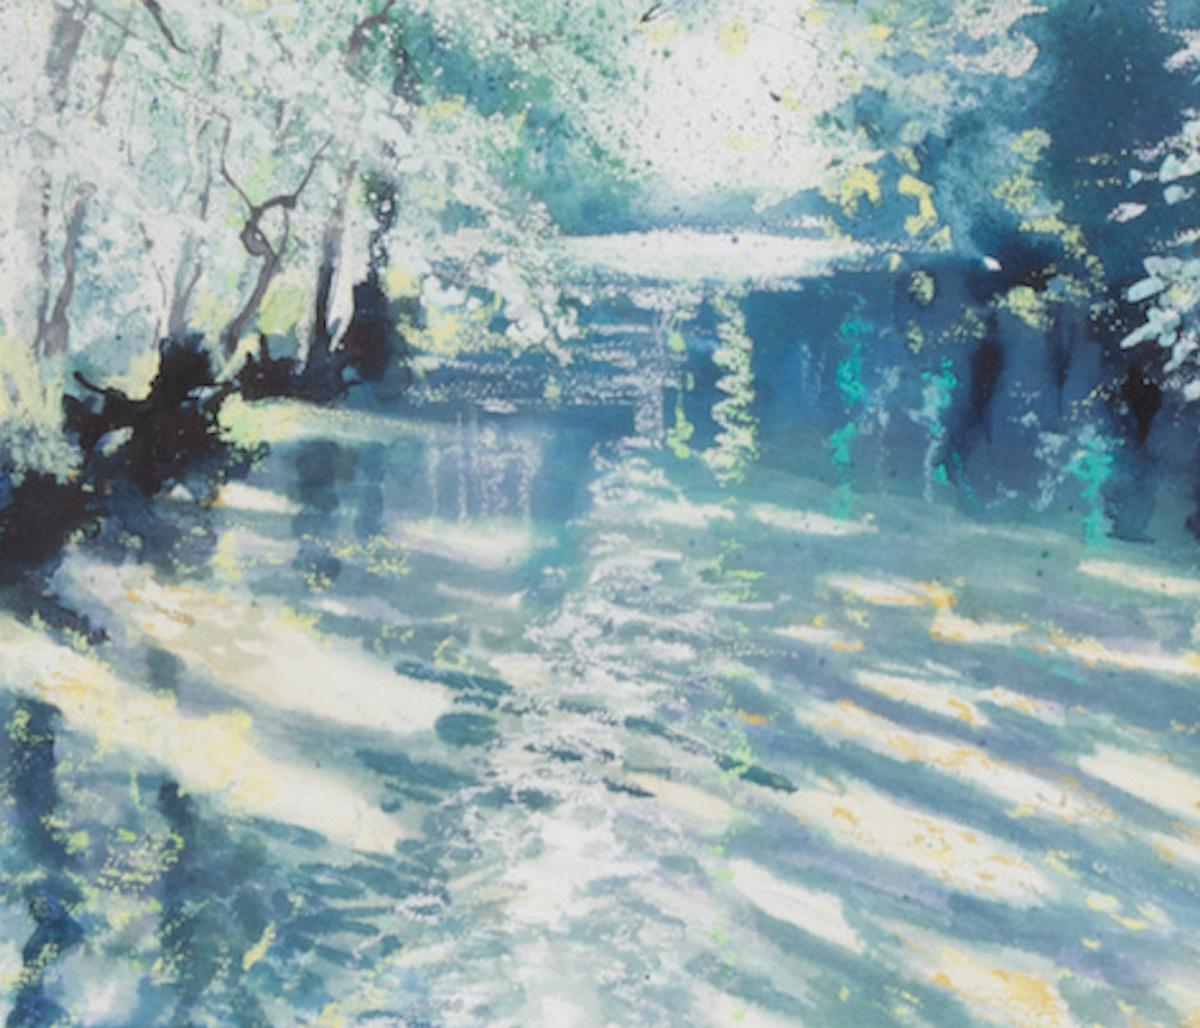 La rivière près de chez moi est souvent spectaculaire au petit matin, j'adore peindre les reflets et l'eau.

Lumière du début de la rivière [2021] par Nicola Wiehahn
Original et signé à la main par l'artiste 
Technique mixte sur papier aquarelle